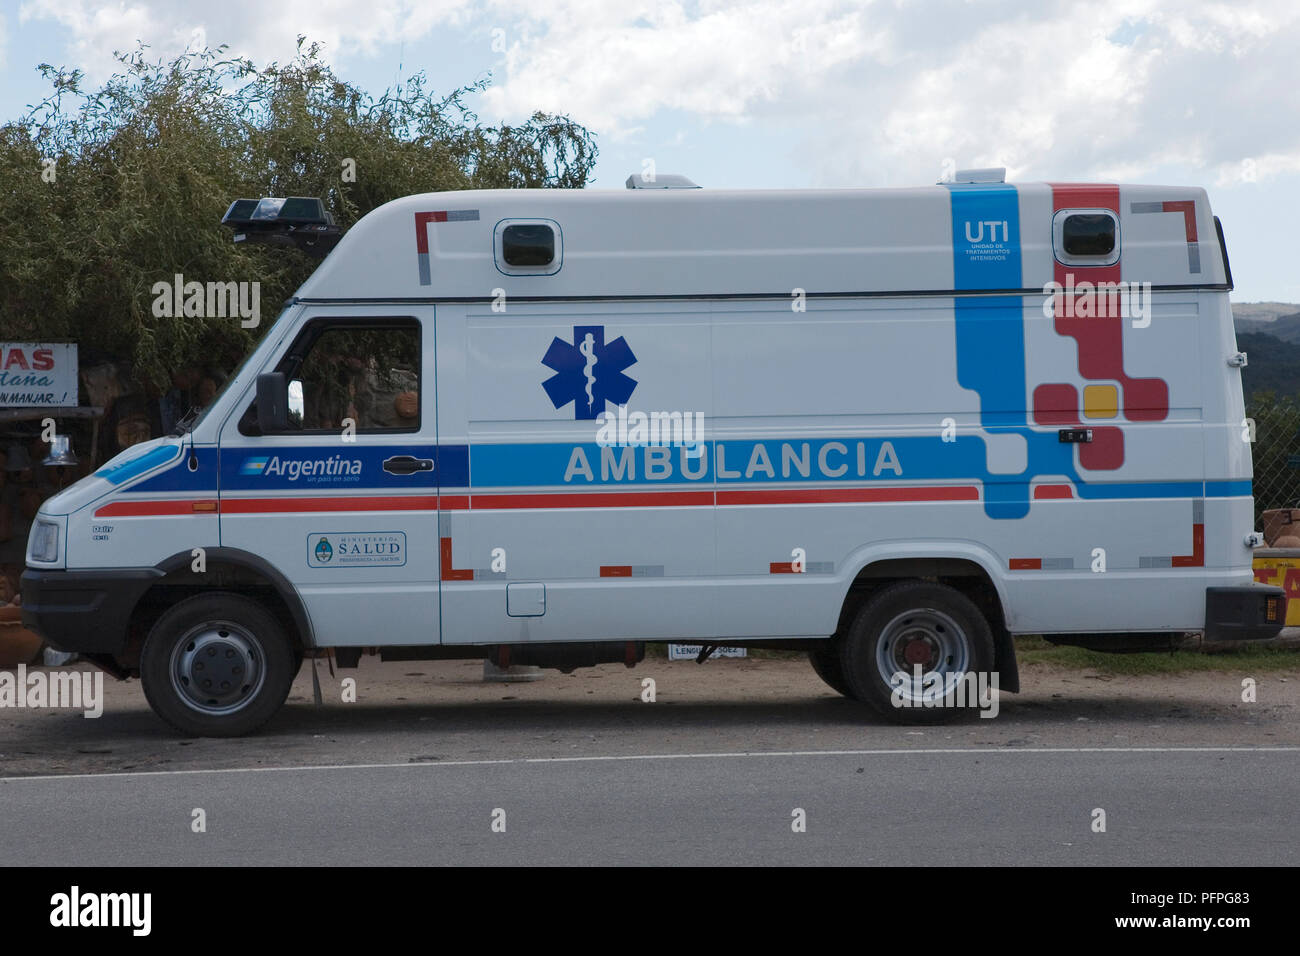 Argentina, ambulance Stock Photo